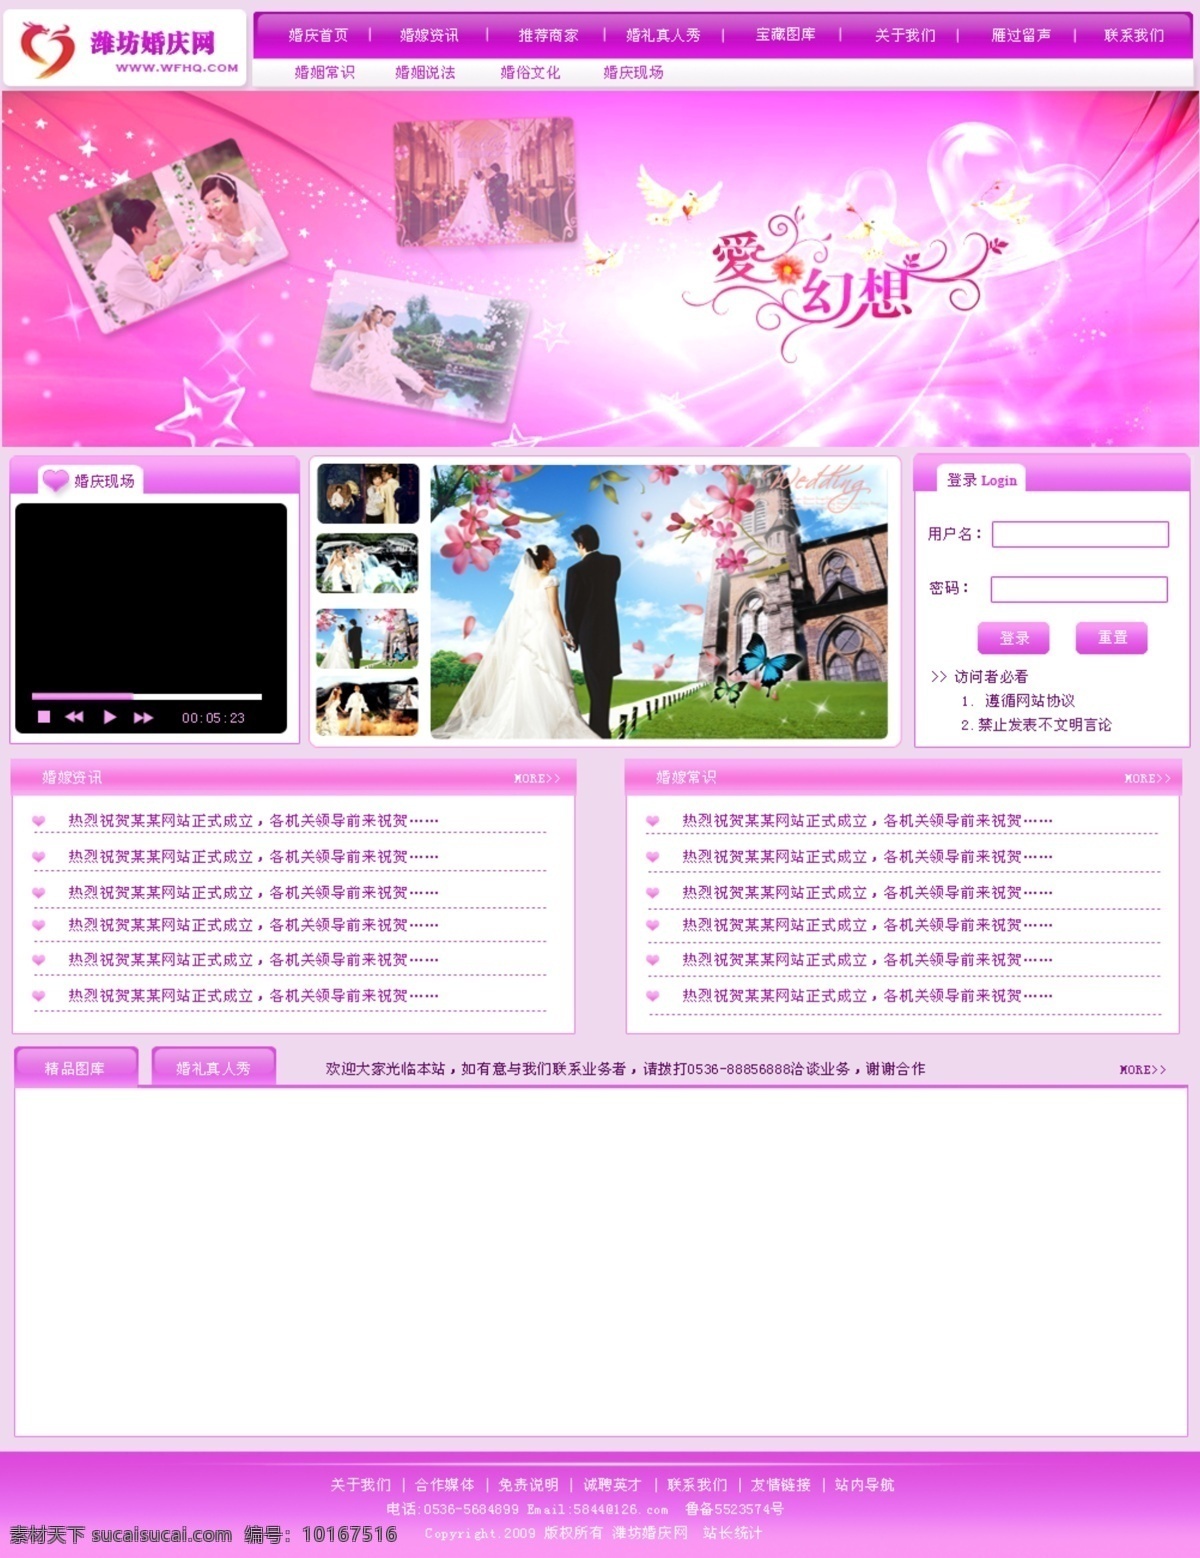 结婚 网页 幕布 粉色 婚纱 交友 网页模板 结婚网页幕布 网站 中文模版 源文件 网页素材